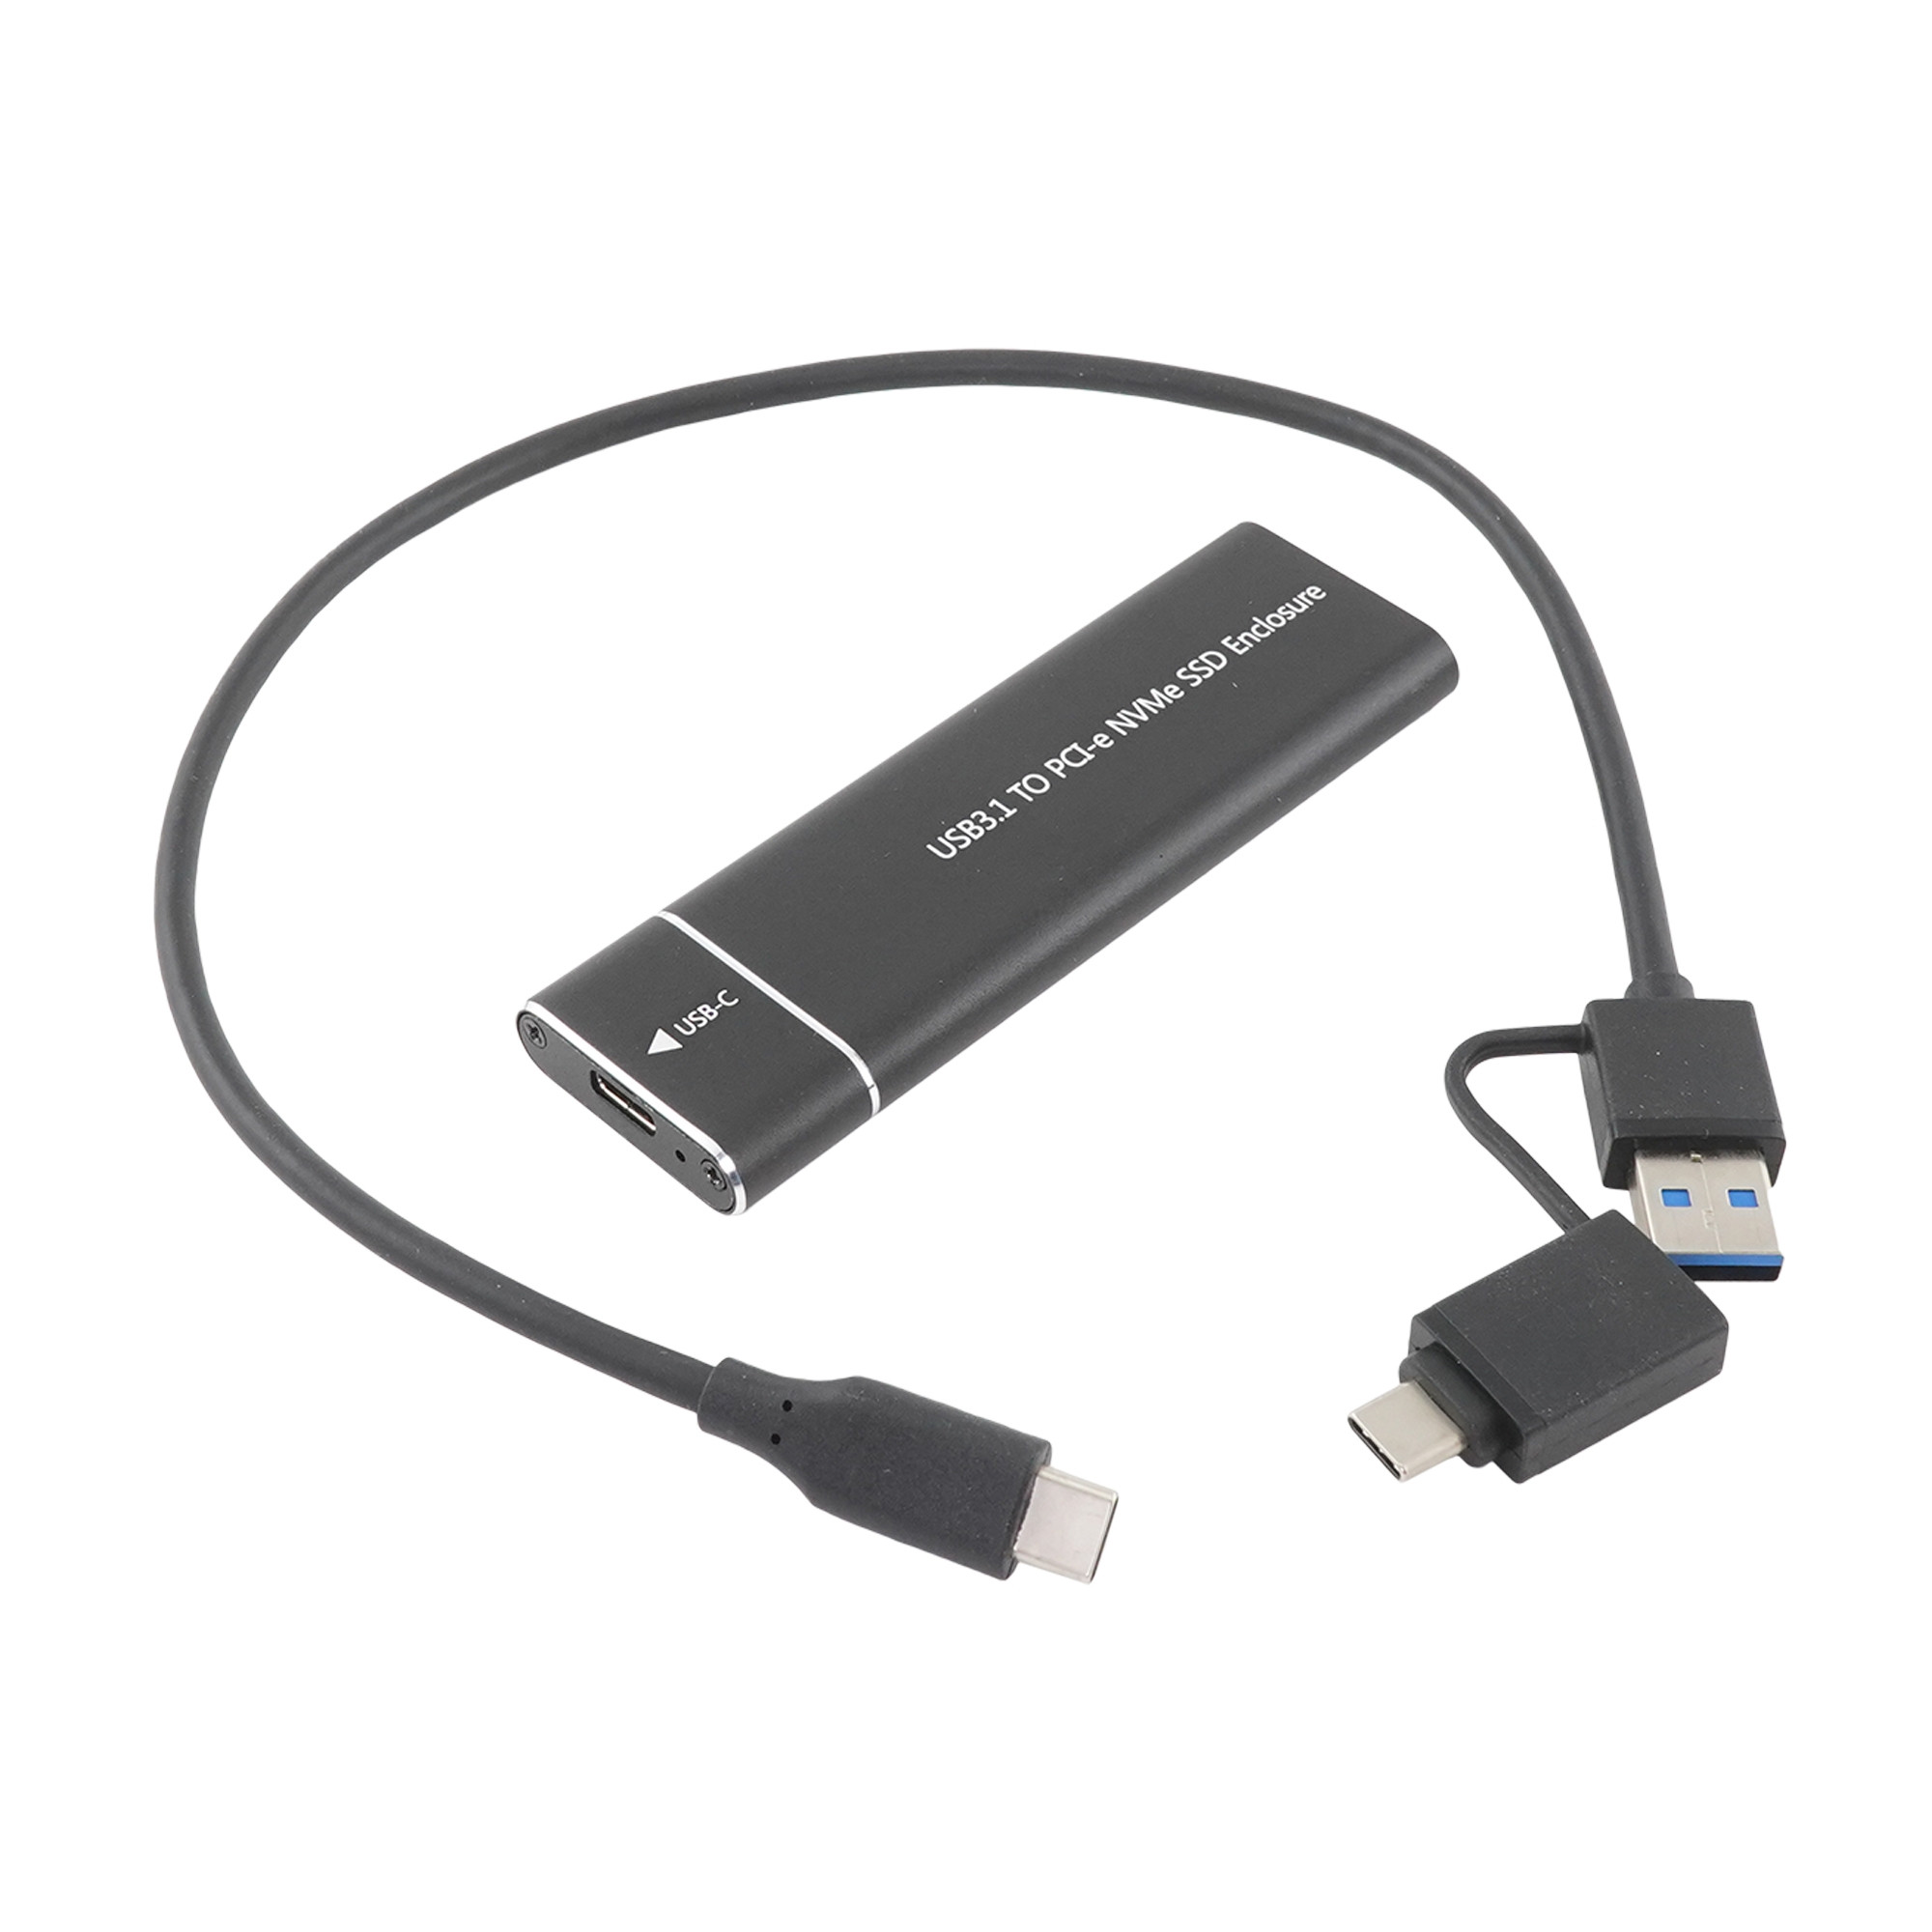 Купить  Внешний бокс для M.2 (NVMe) SATA - USB 3.1 Type-C,(кабель Type-C-Type-C/USB), черный